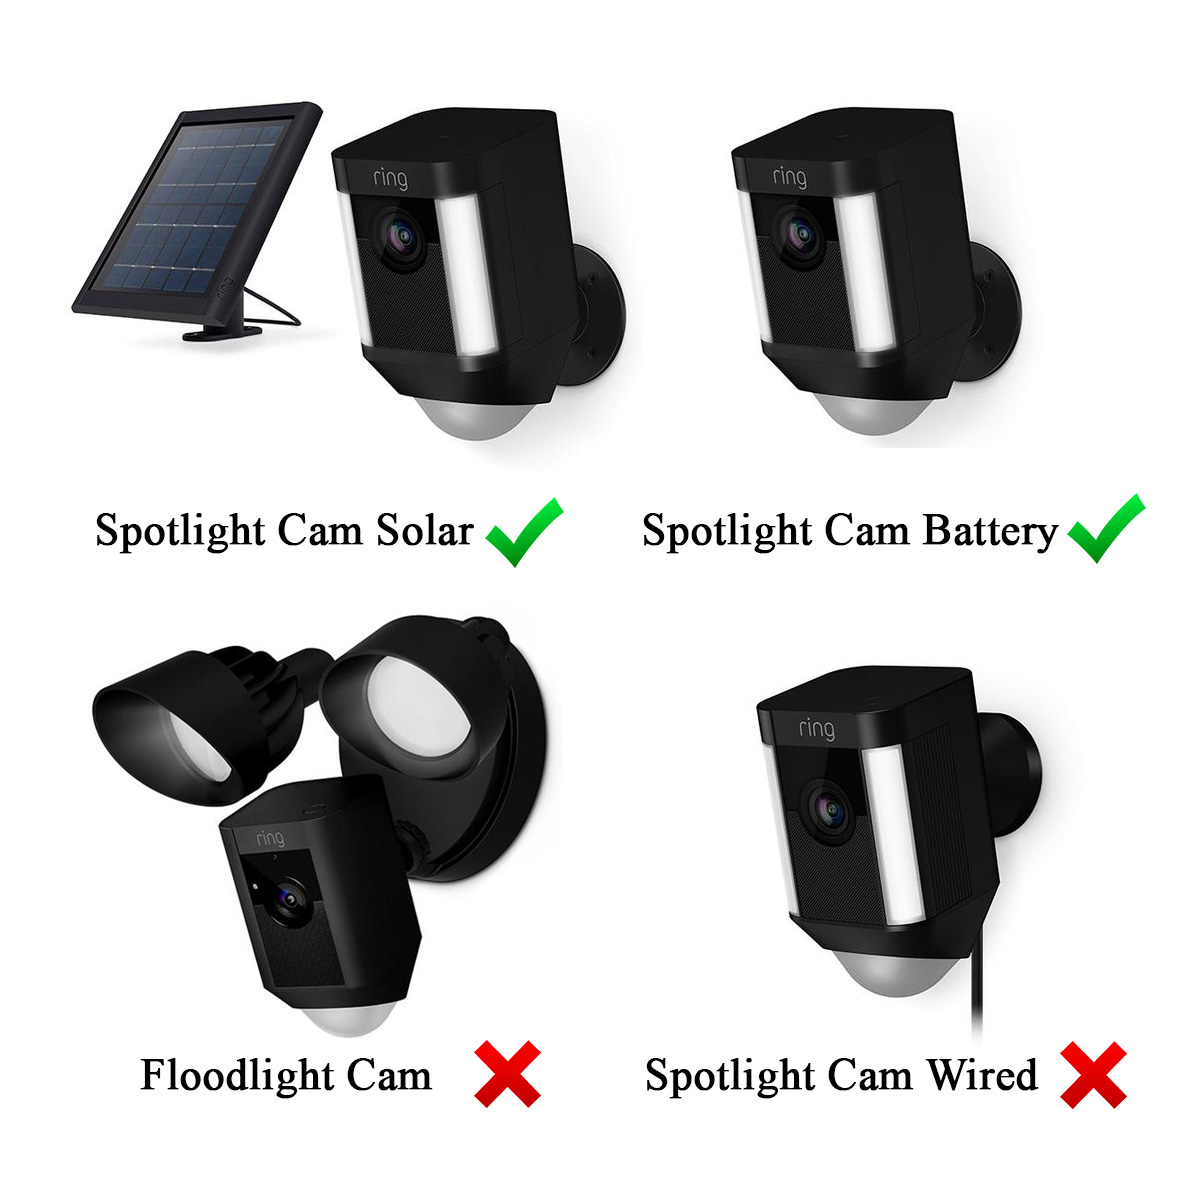 ring floodlight cam solar